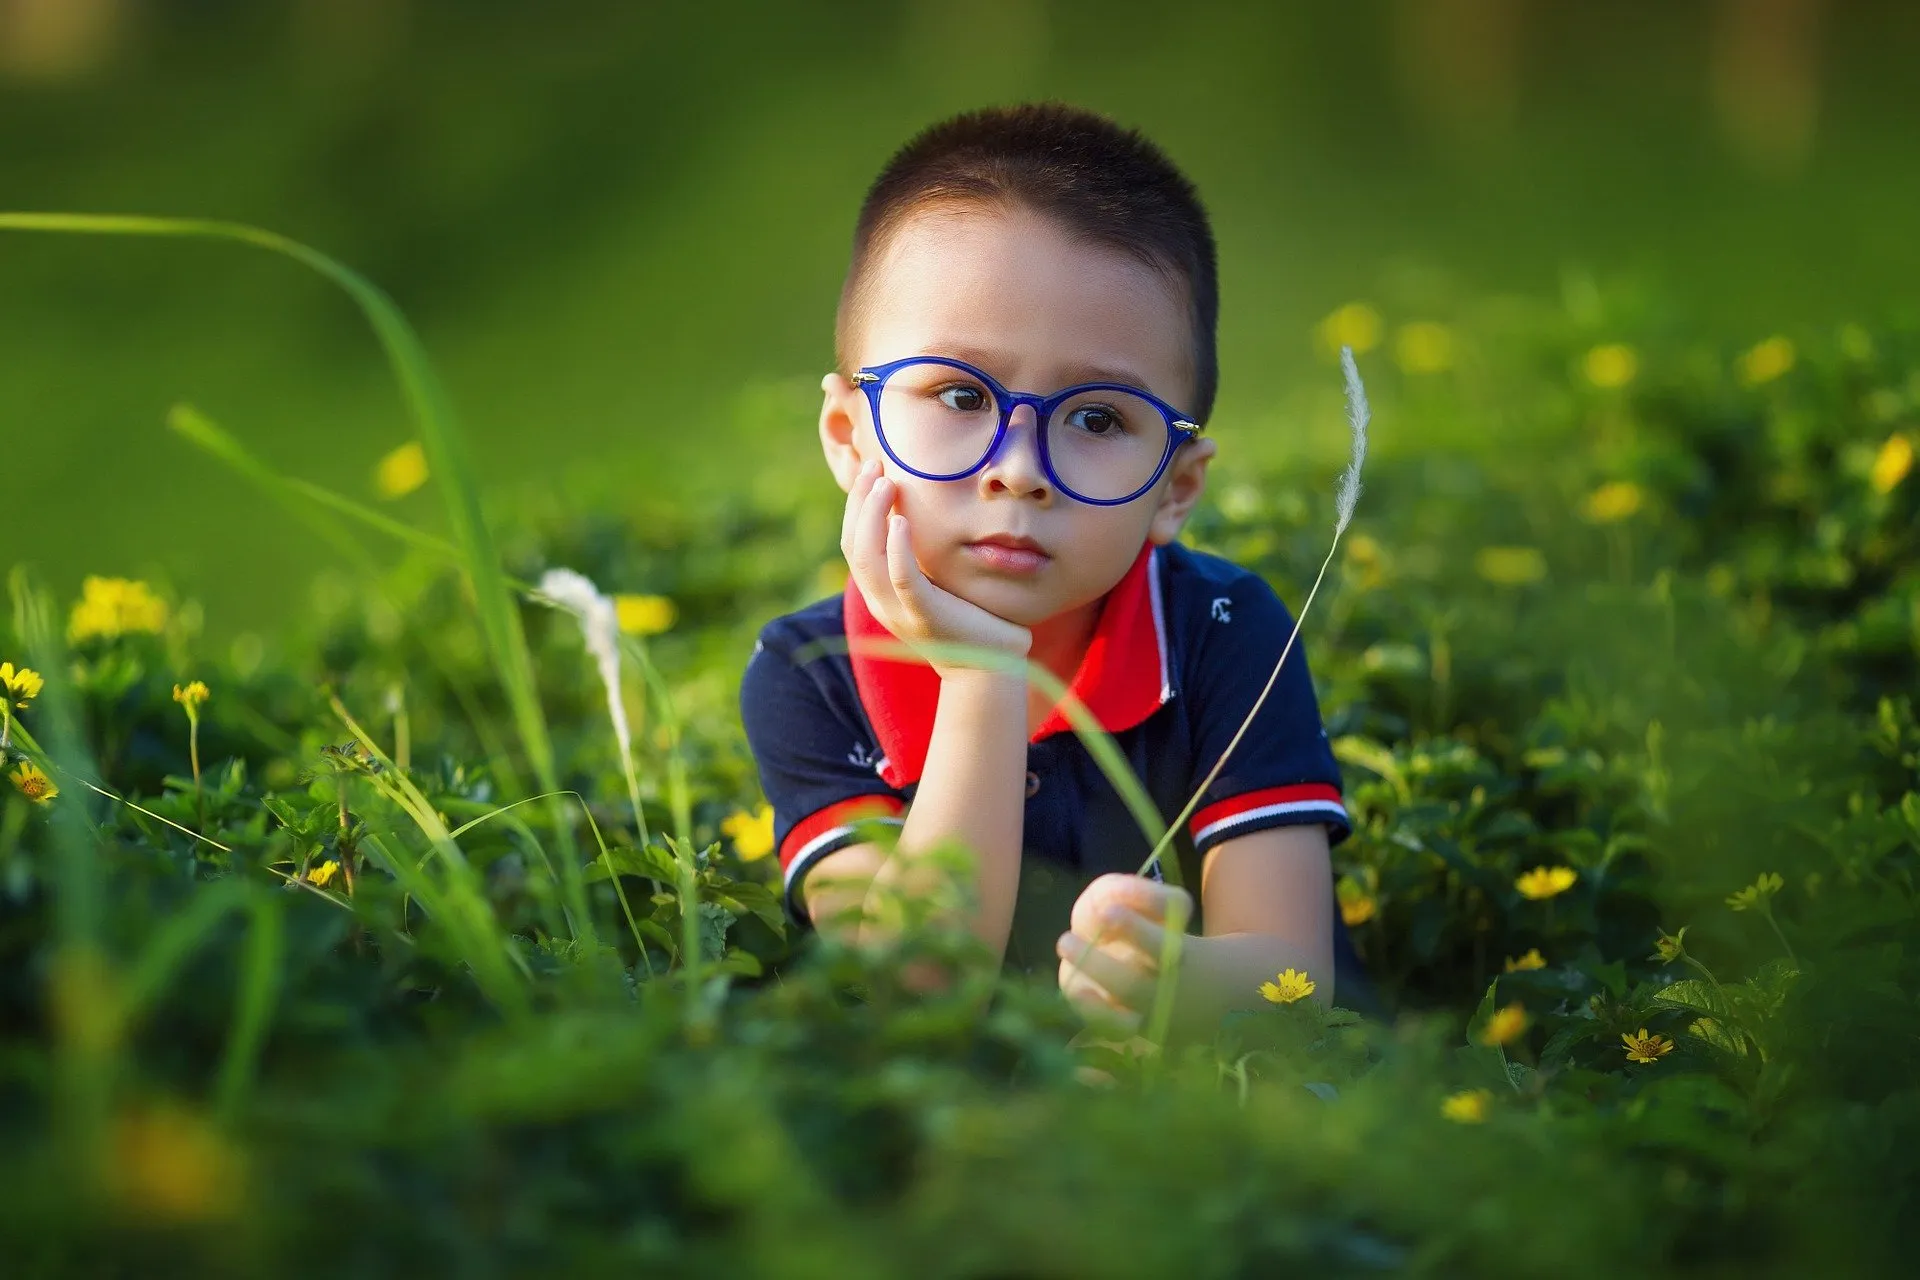 chłopiec w okularach siedzi na łące, w czerwcu pyłków jest dużo